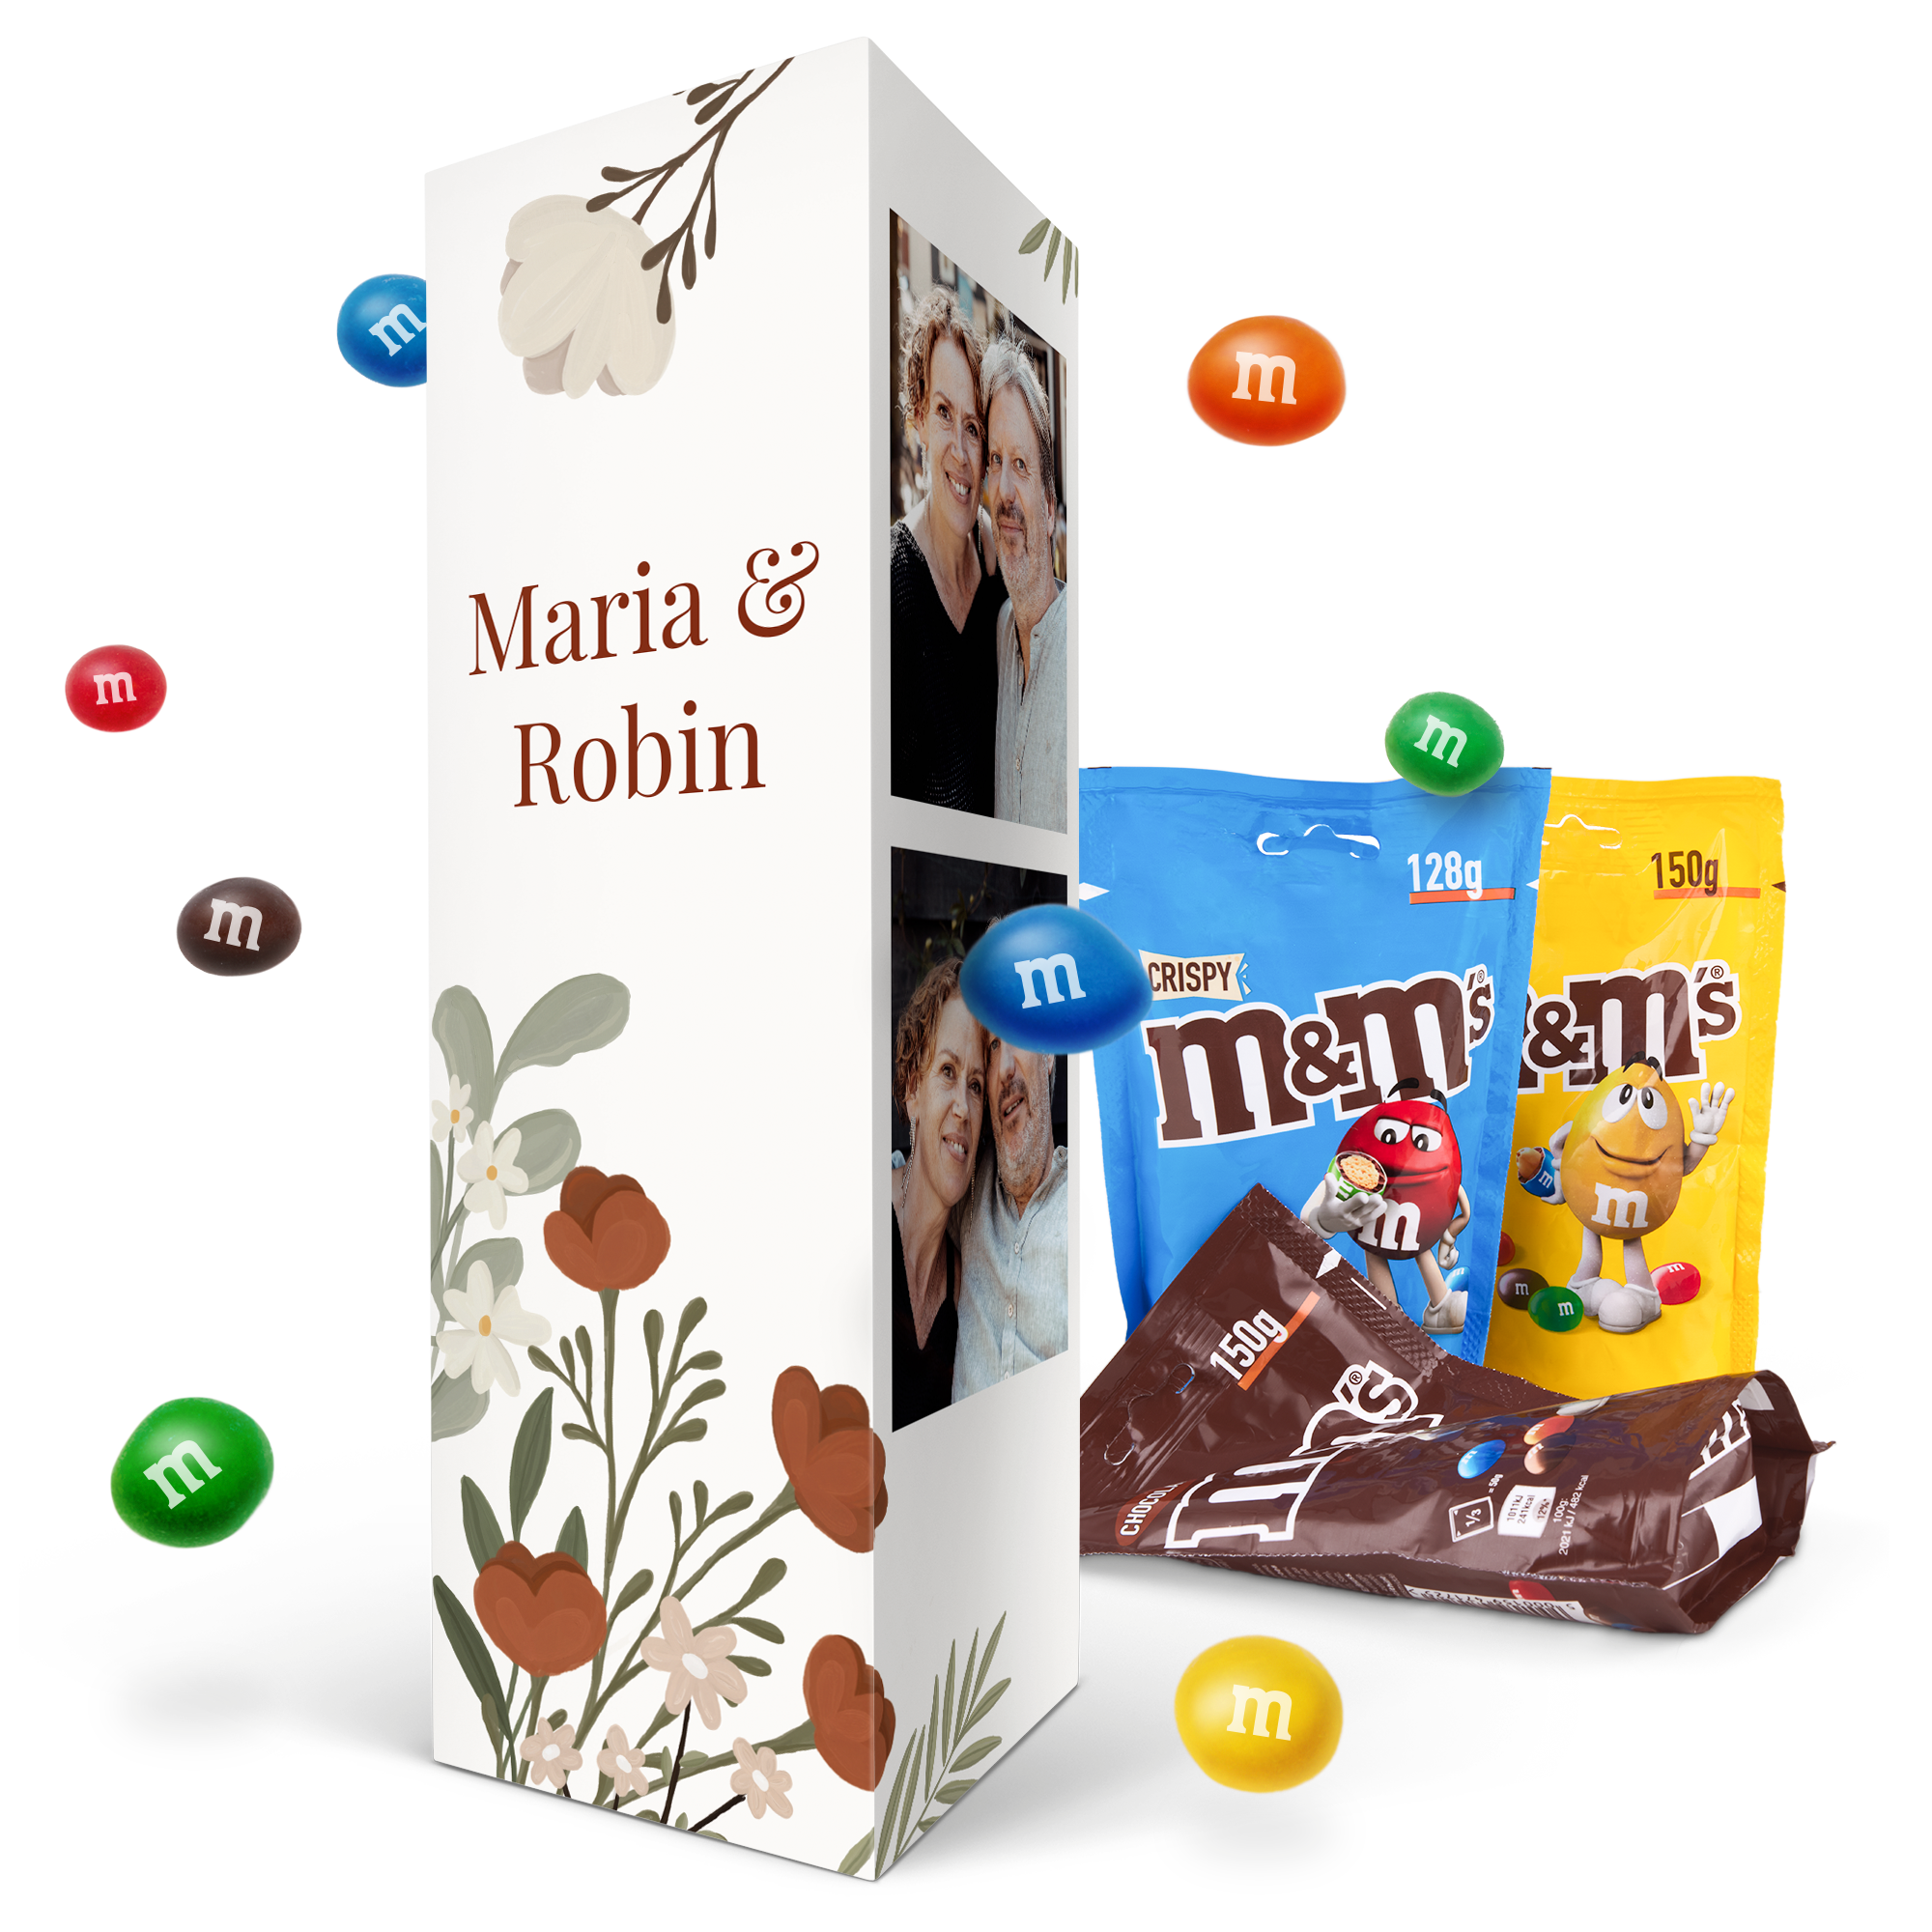 Gepersonaliseerd cadeaupakket met M&M's chocolade